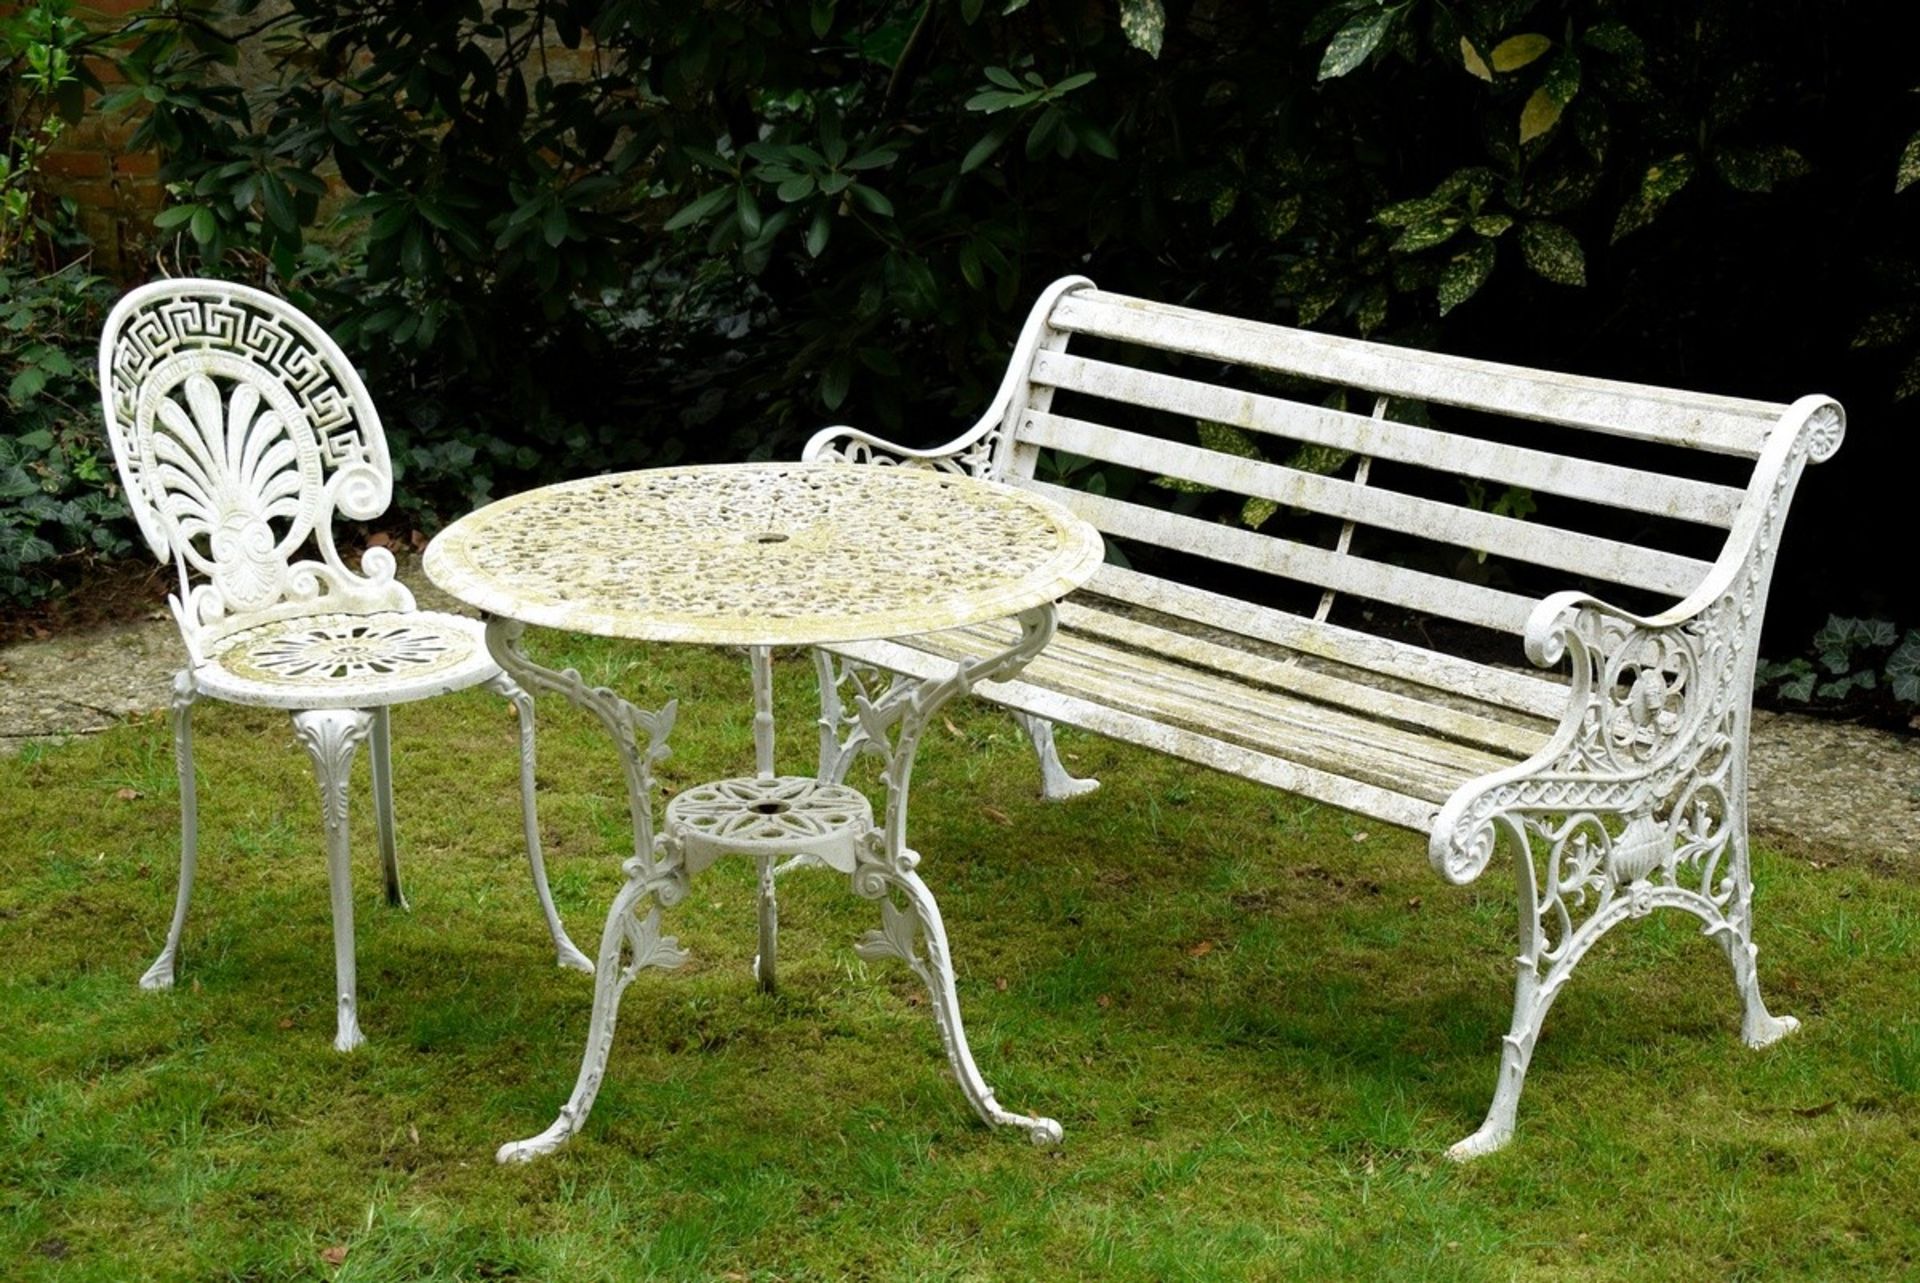 3 Teile Gusseisen Gartenmöbel: Bank mit Holzstre | 3 pieces cast iron garden furniture: bench with